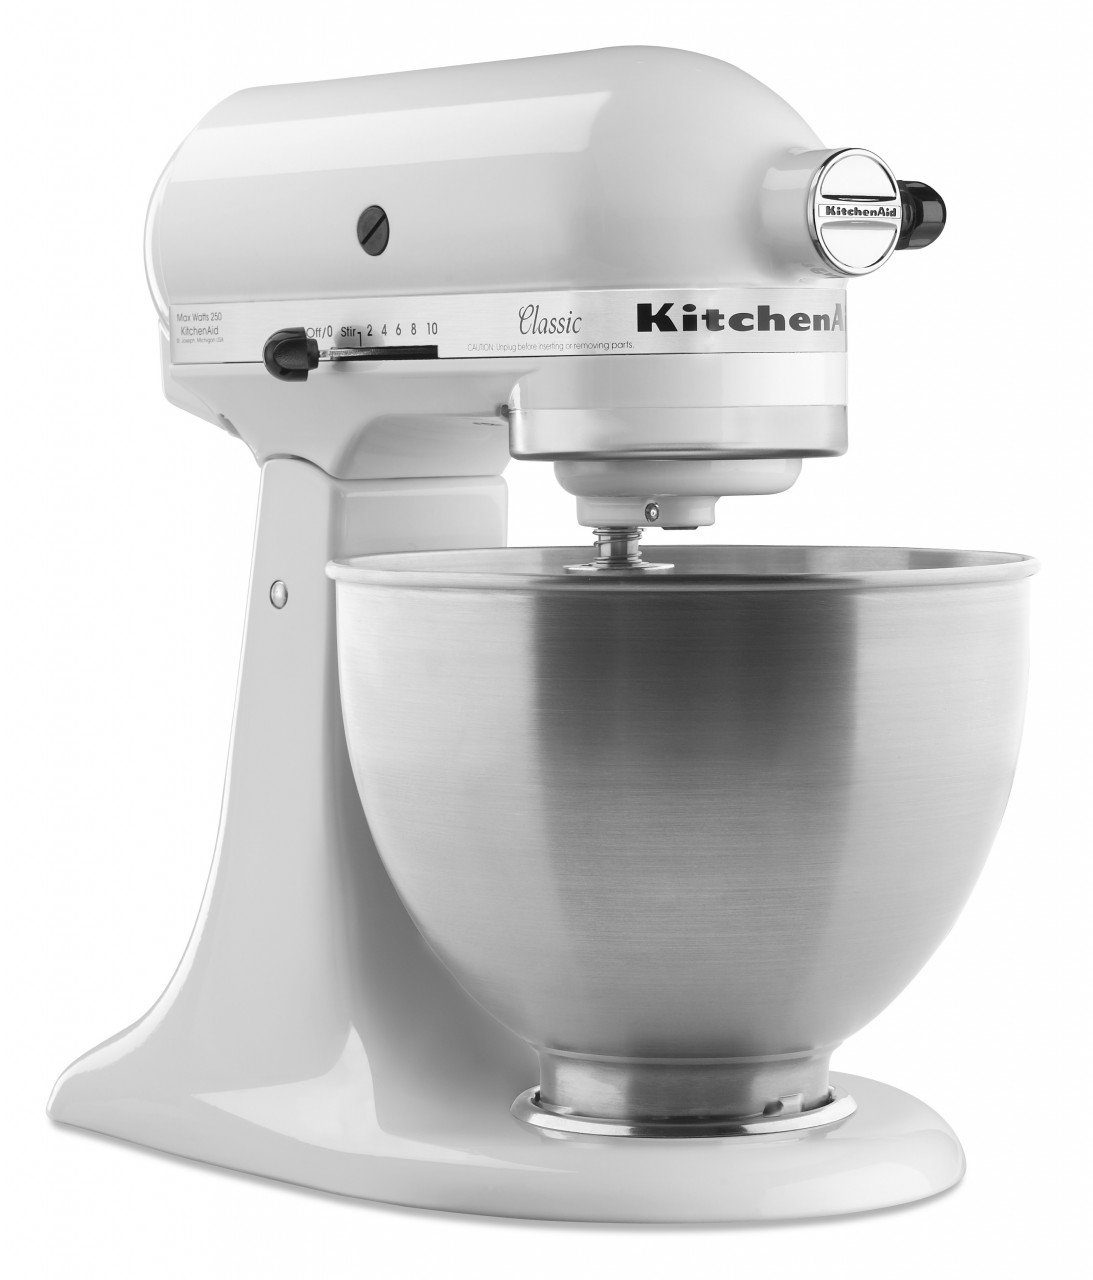 Weiß L Küchenmaschine KitchenAid 5K45SS Küchenmaschine KitchenAid Classic 4,3